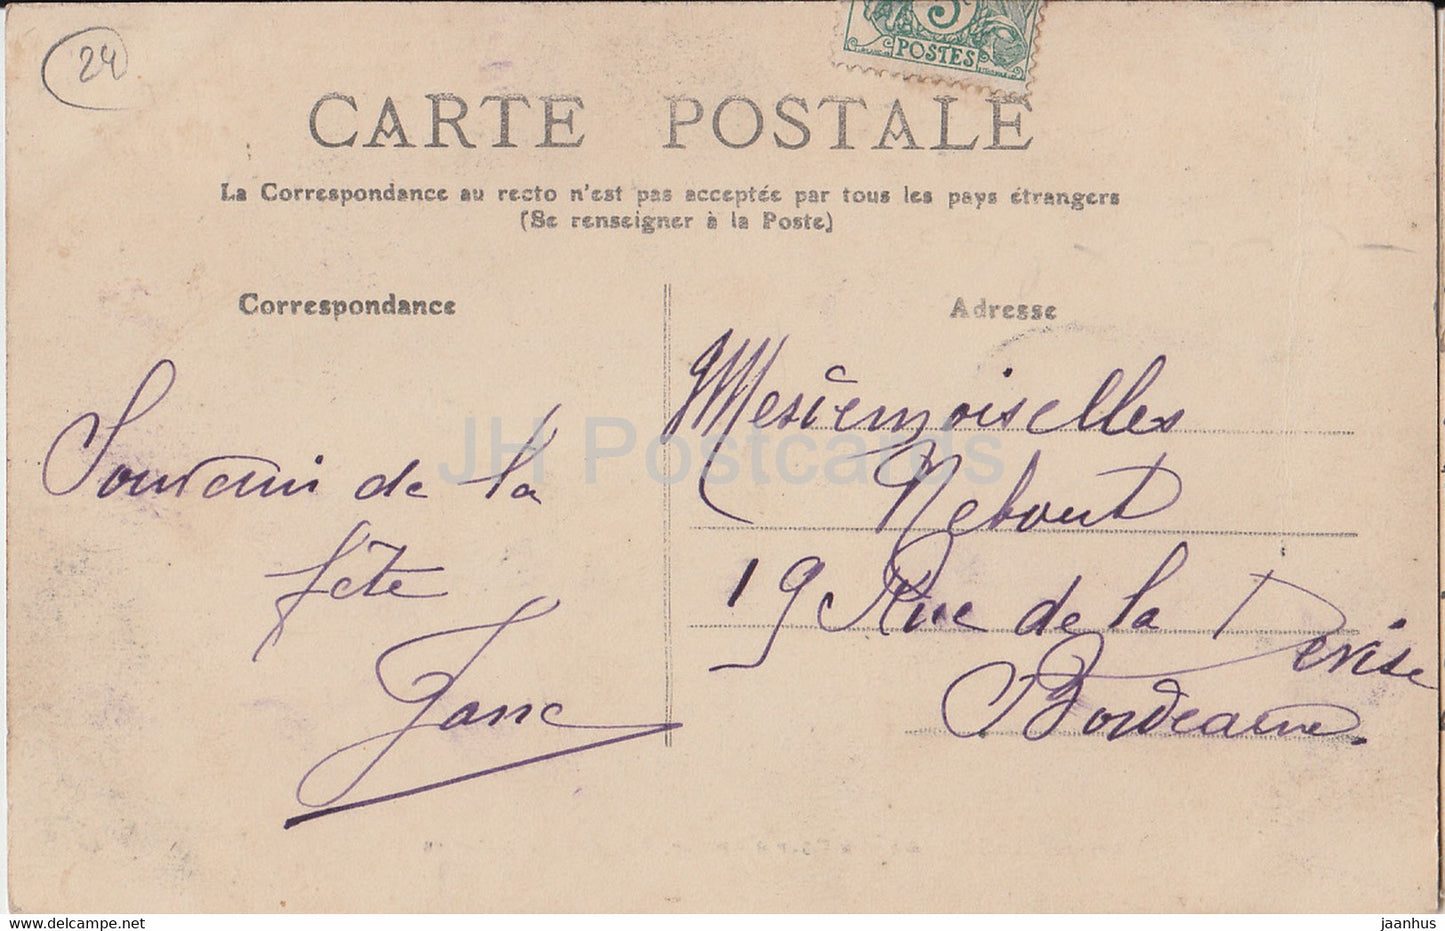 Chancelade - La Cour d'Amour - Vue des Spectateurs - 43 - alte Postkarte - 1907 - Frankreich - gebraucht